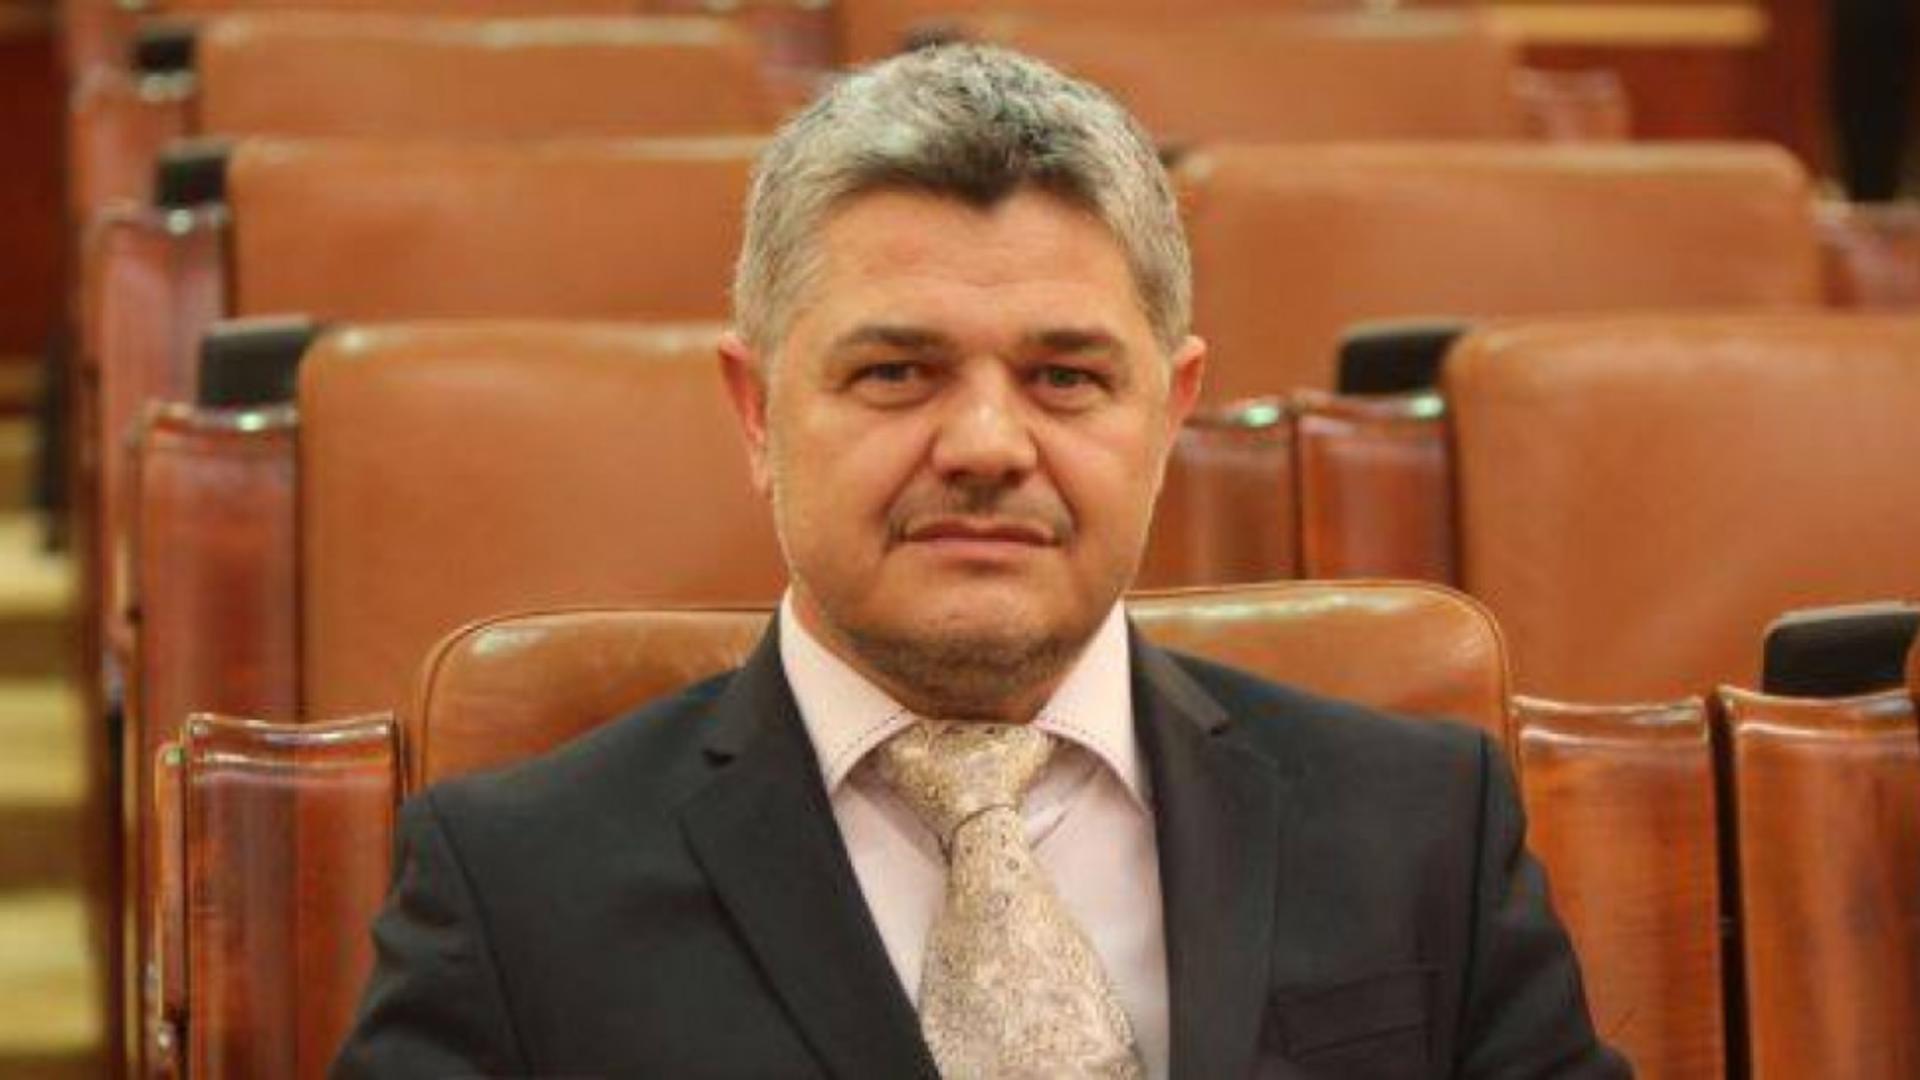  Ninel Peia salută începerea unor negocieri care să ajute la înlăturea celor care încearcă să confiște democrația din România